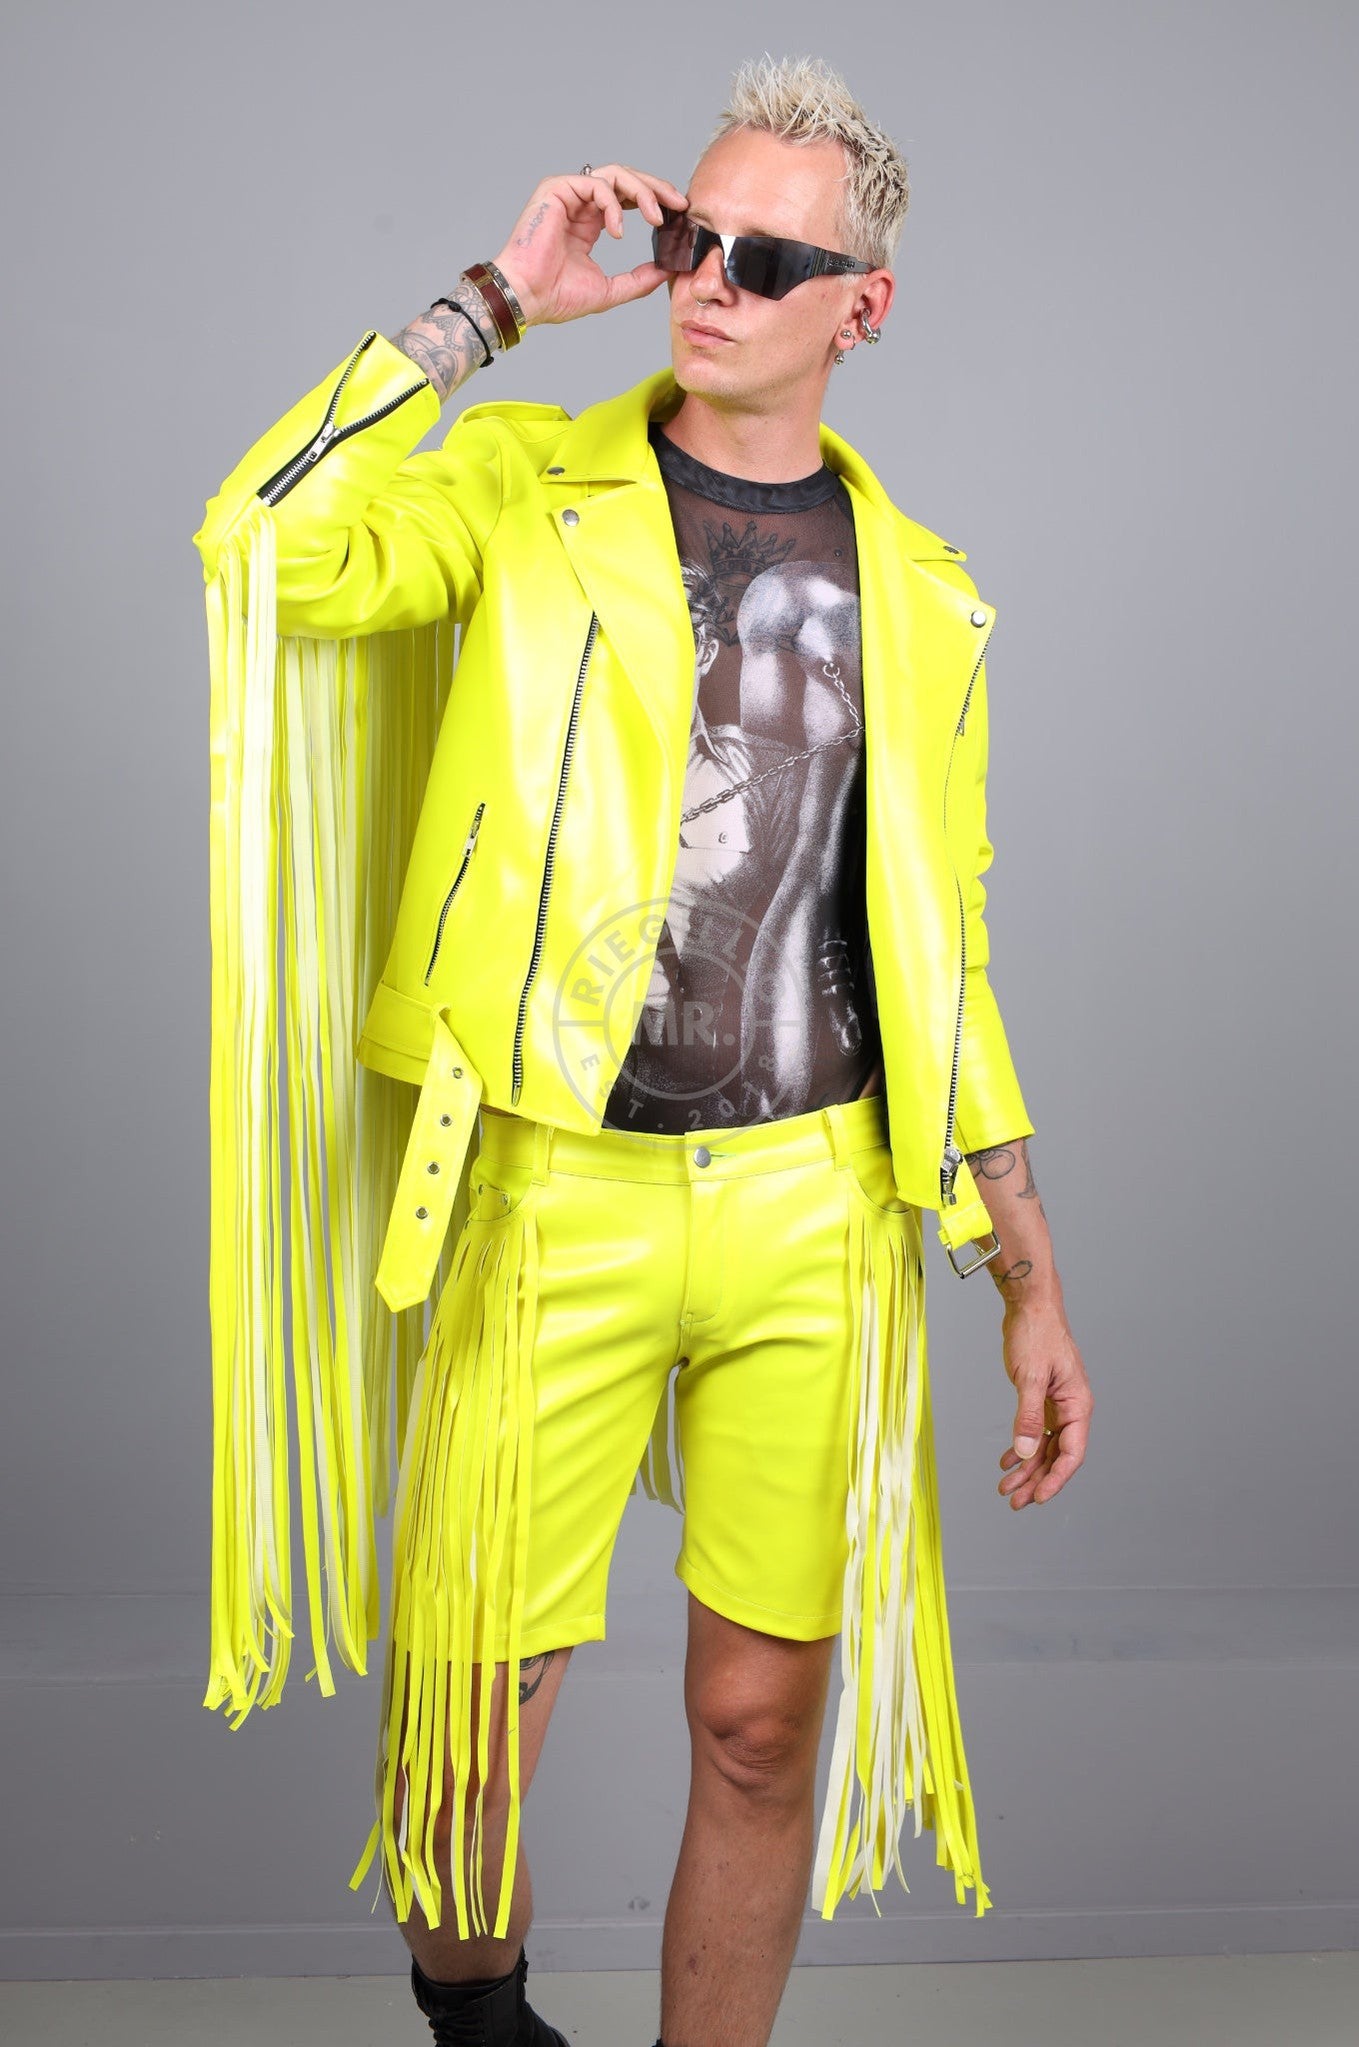 MR. Fringe Biker Jacket - Neon Yellow at MR. Riegillio